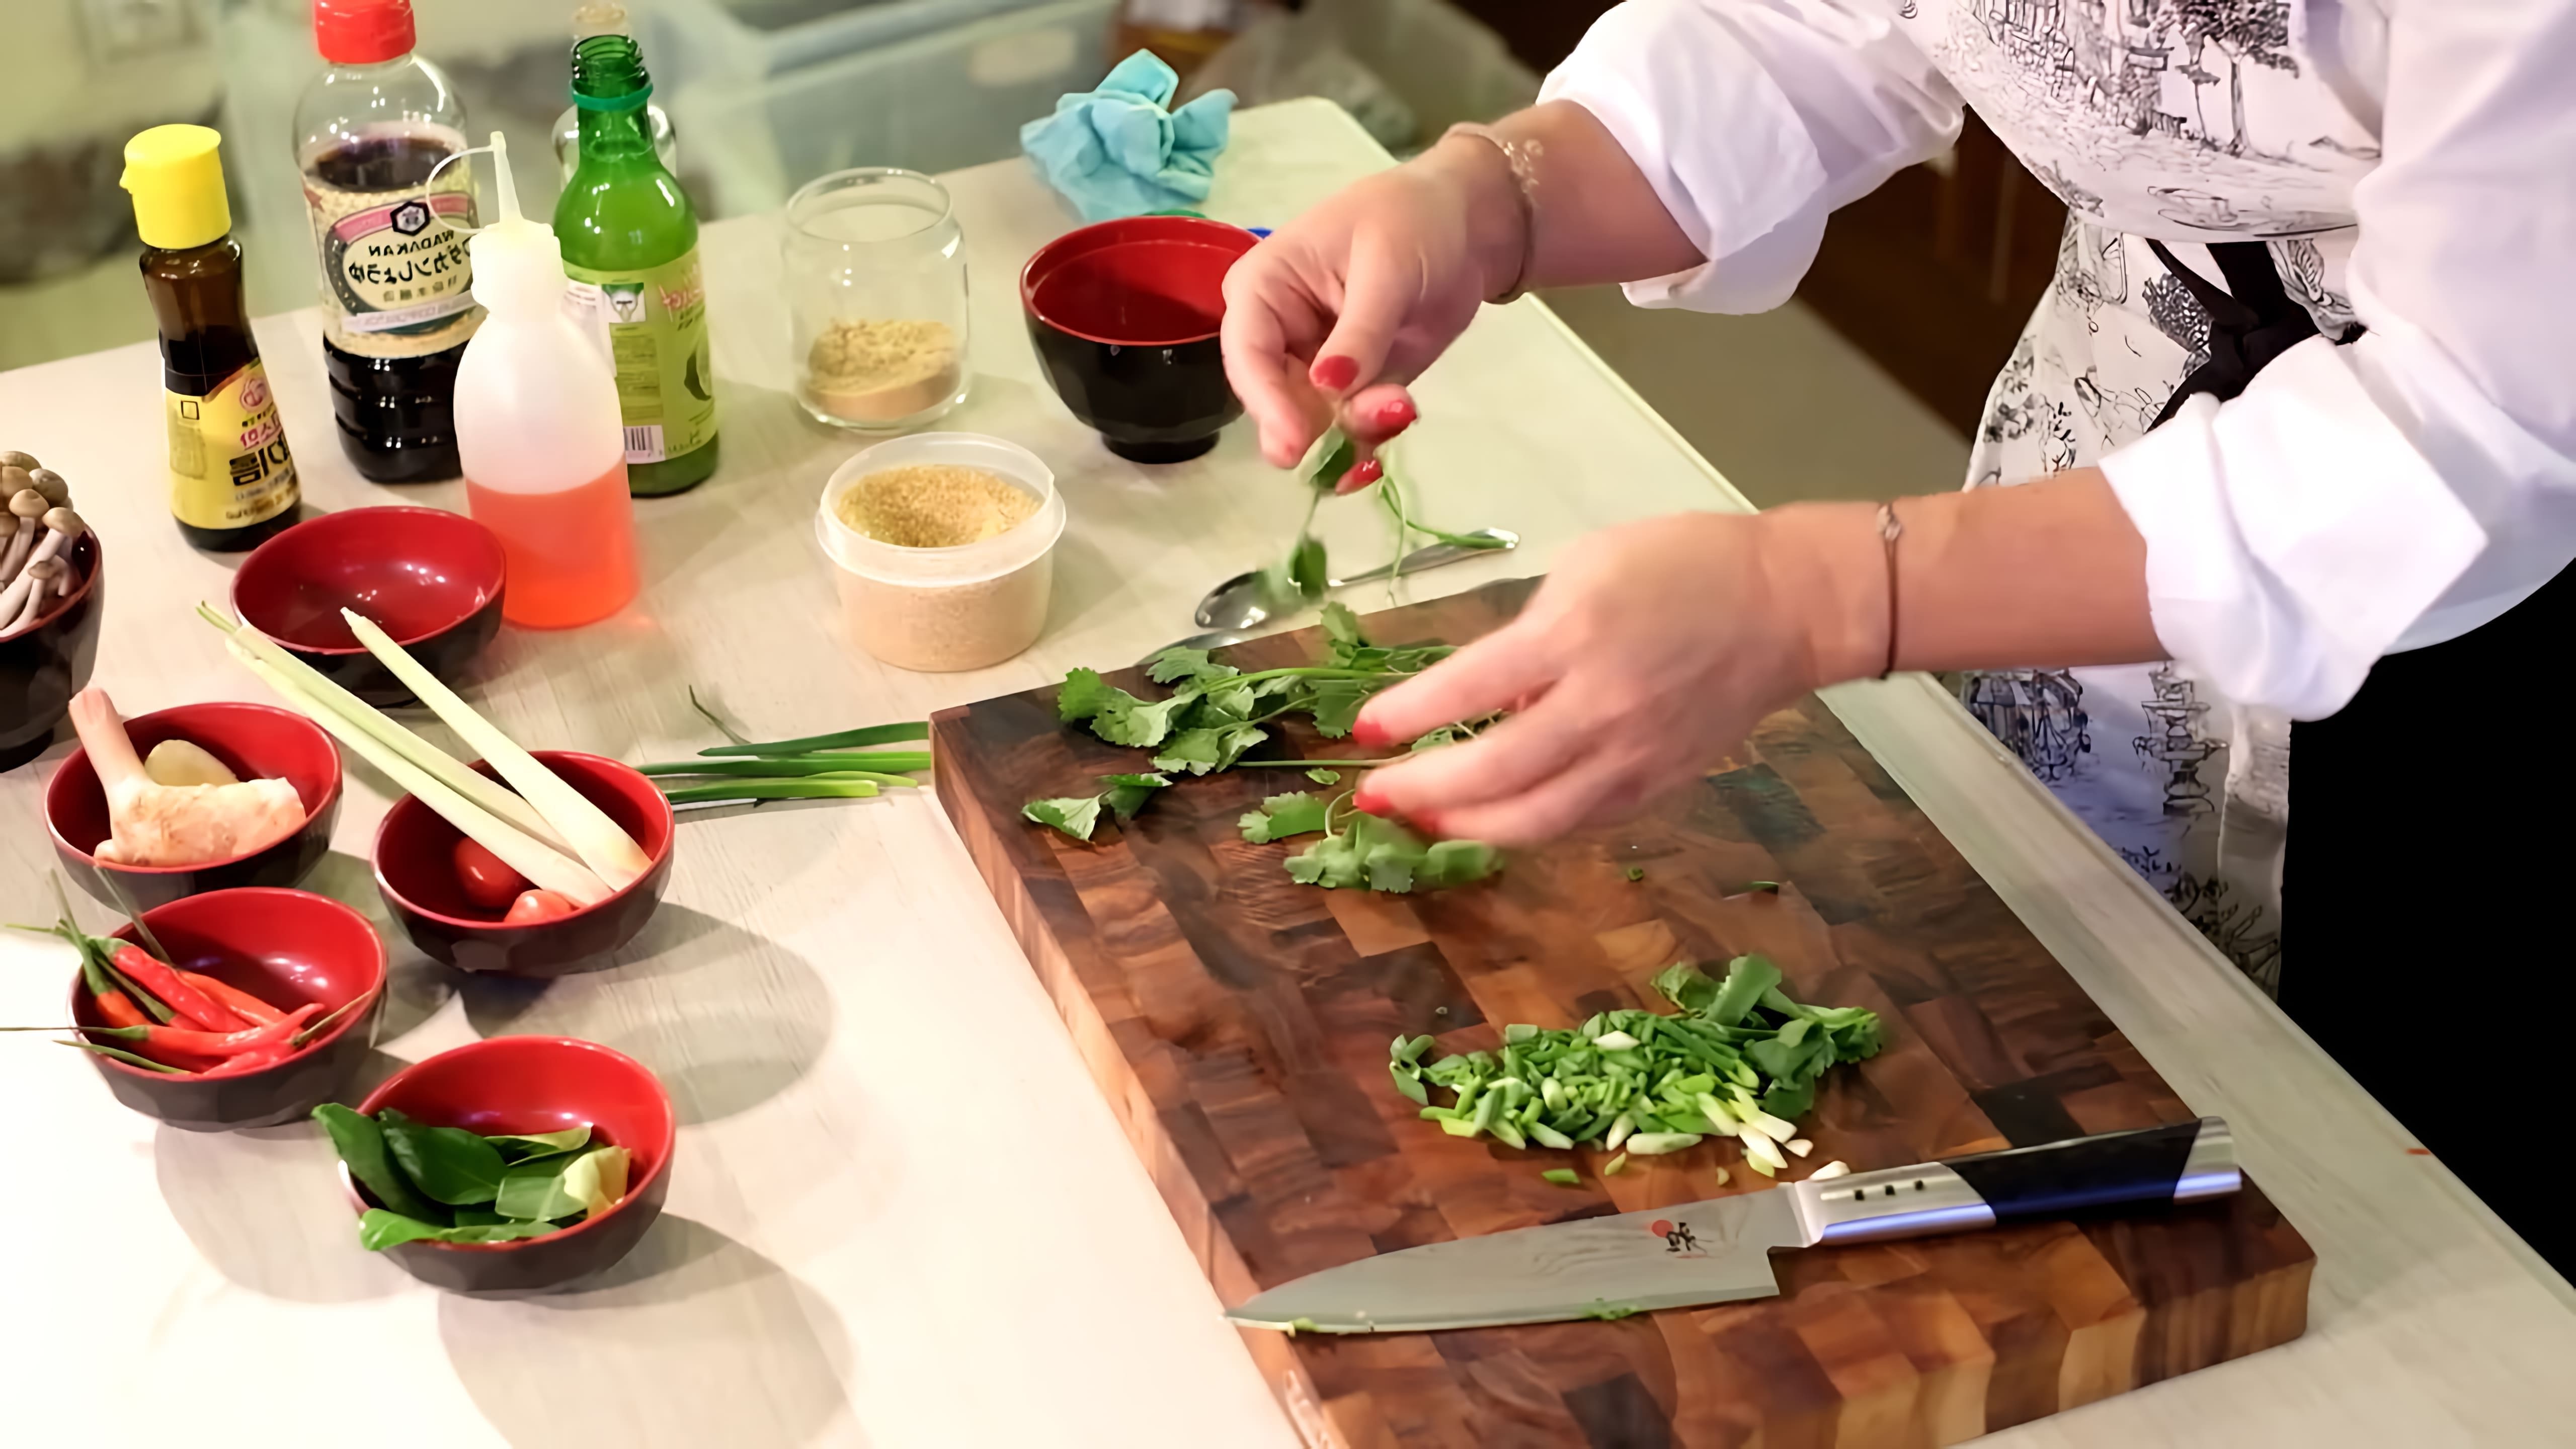 Рецепт настоящего Том Ям (тайский рецепт) - это видео-ролик, который демонстрирует процесс приготовления знаменитого тайского супа Том Ям